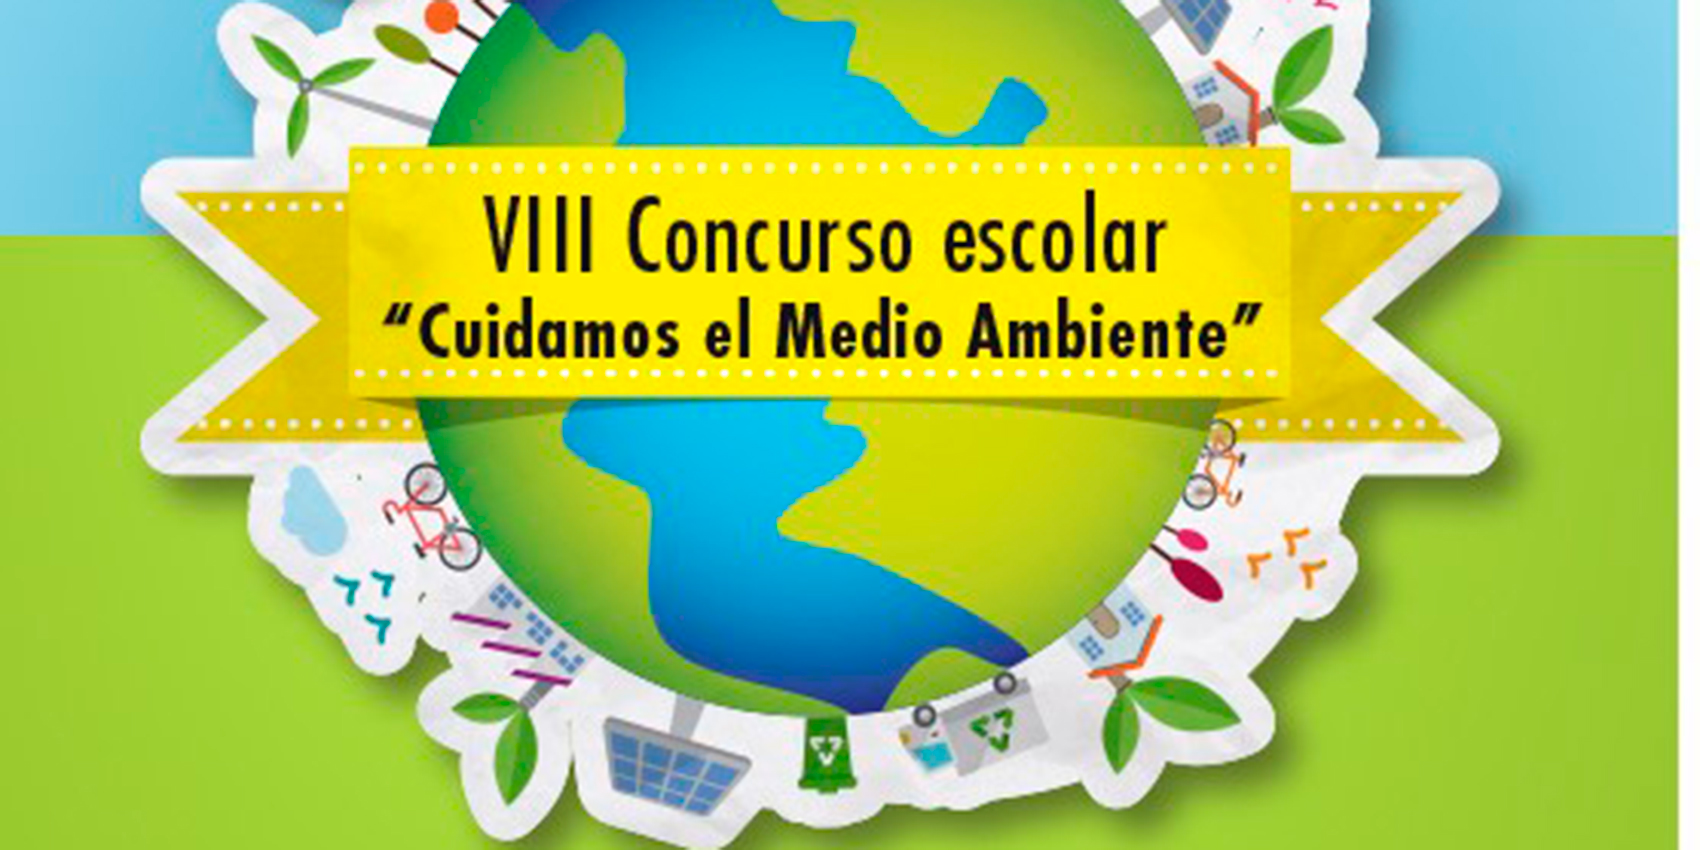 Para participar en el concurso es necesario inscribirse antes del 16 de febrero en la web www.concursomedioambiente.com...